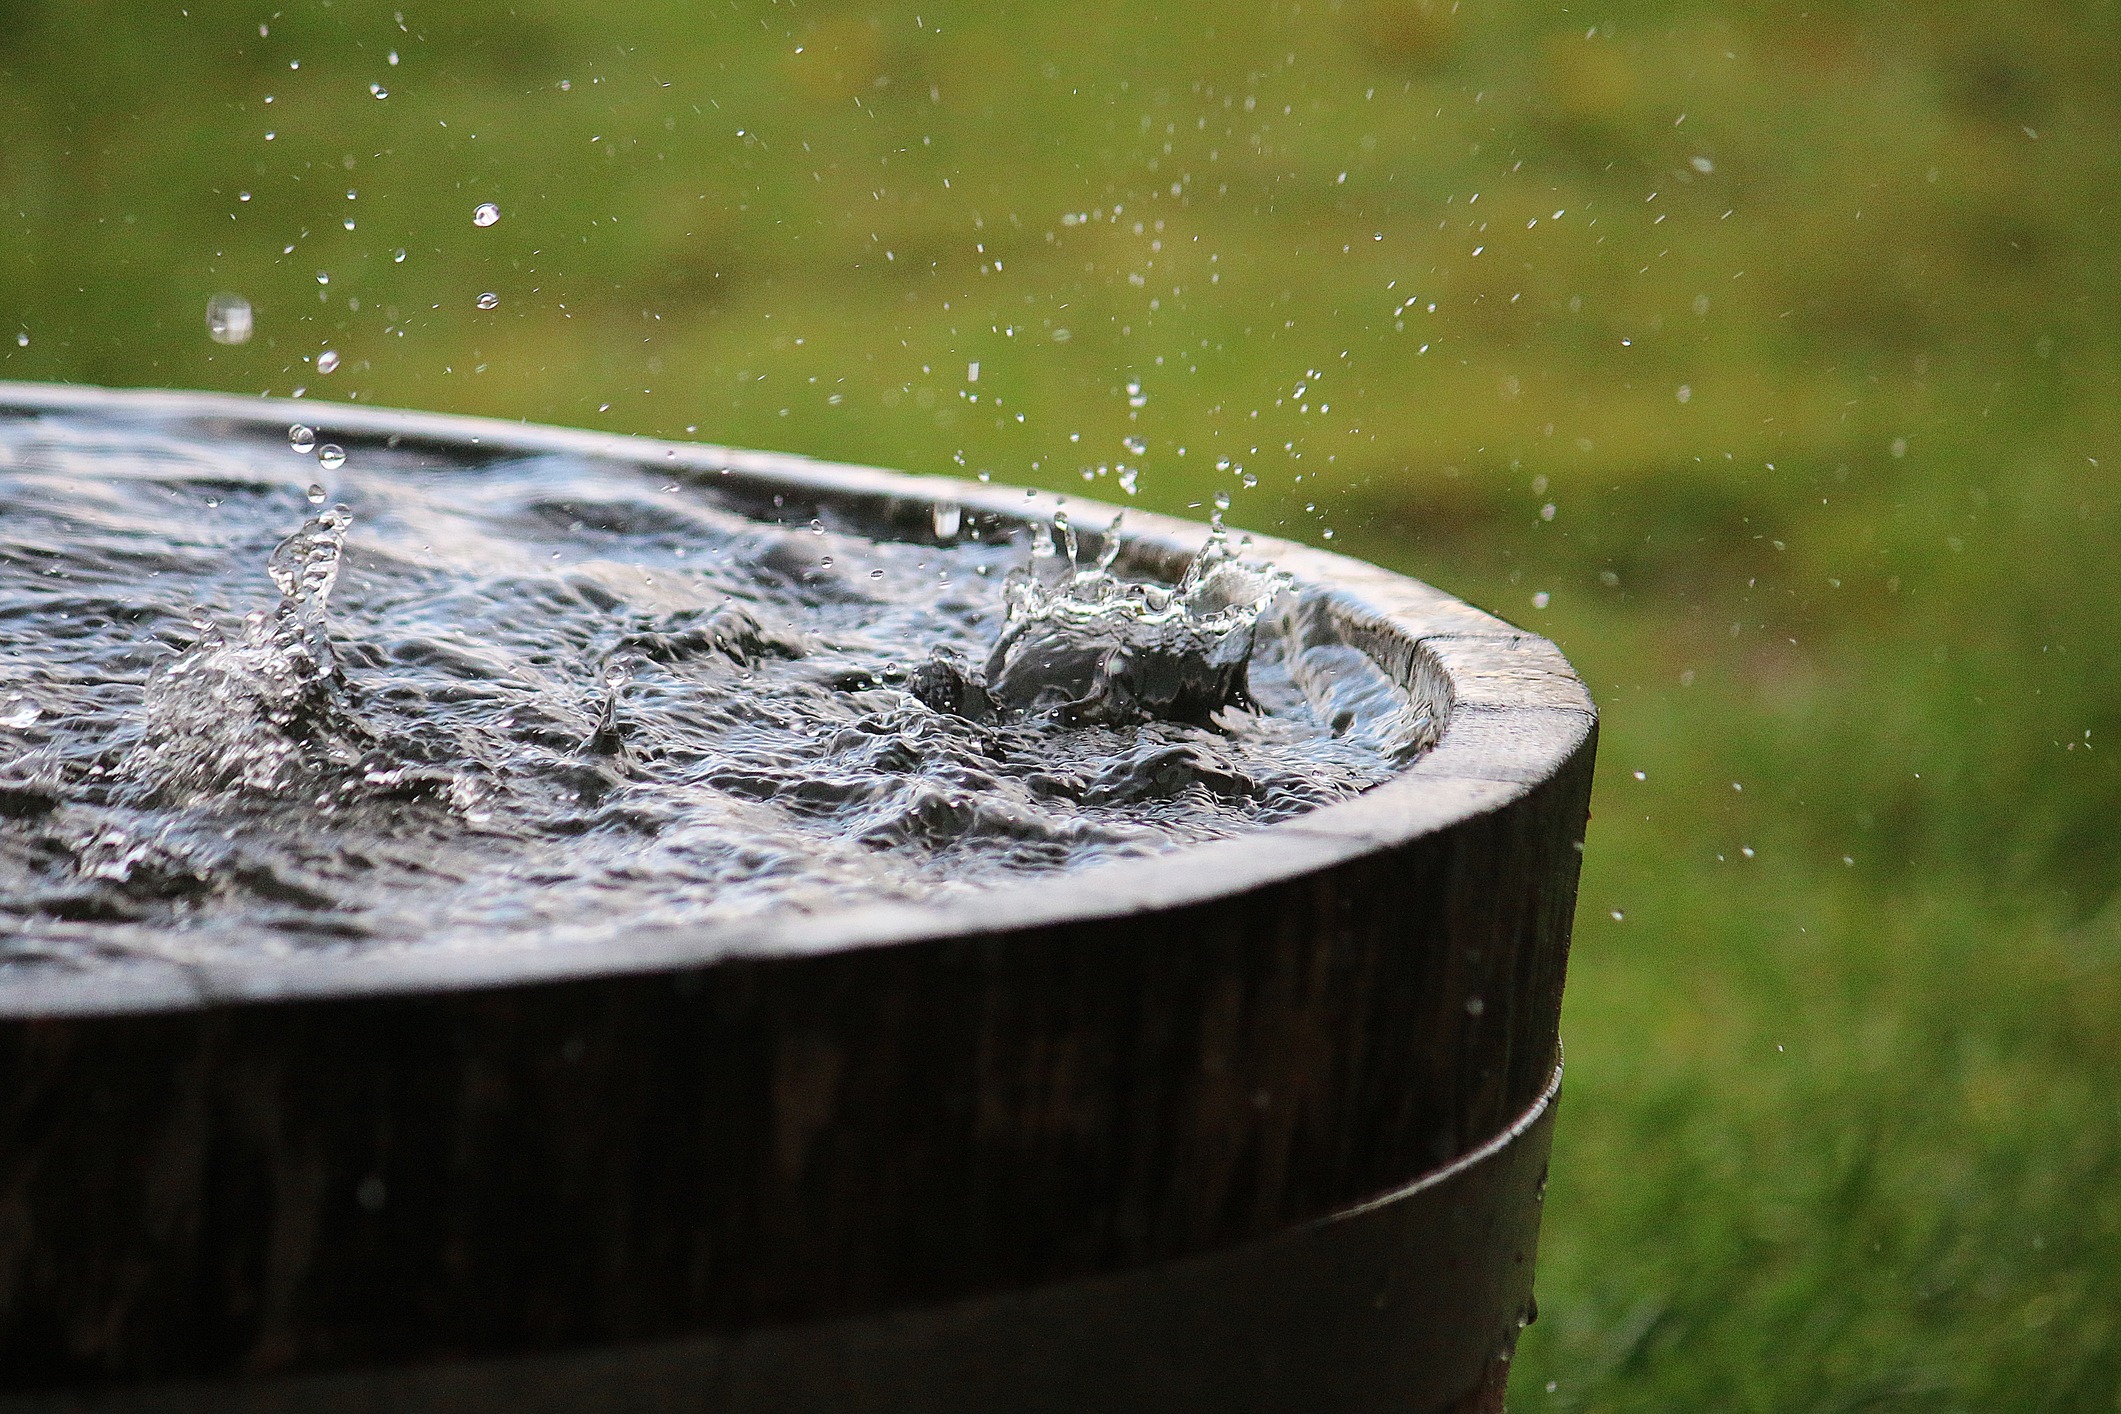 rain-is-falling-in-a-wooden-barrel-full-of-water-in-the-garden